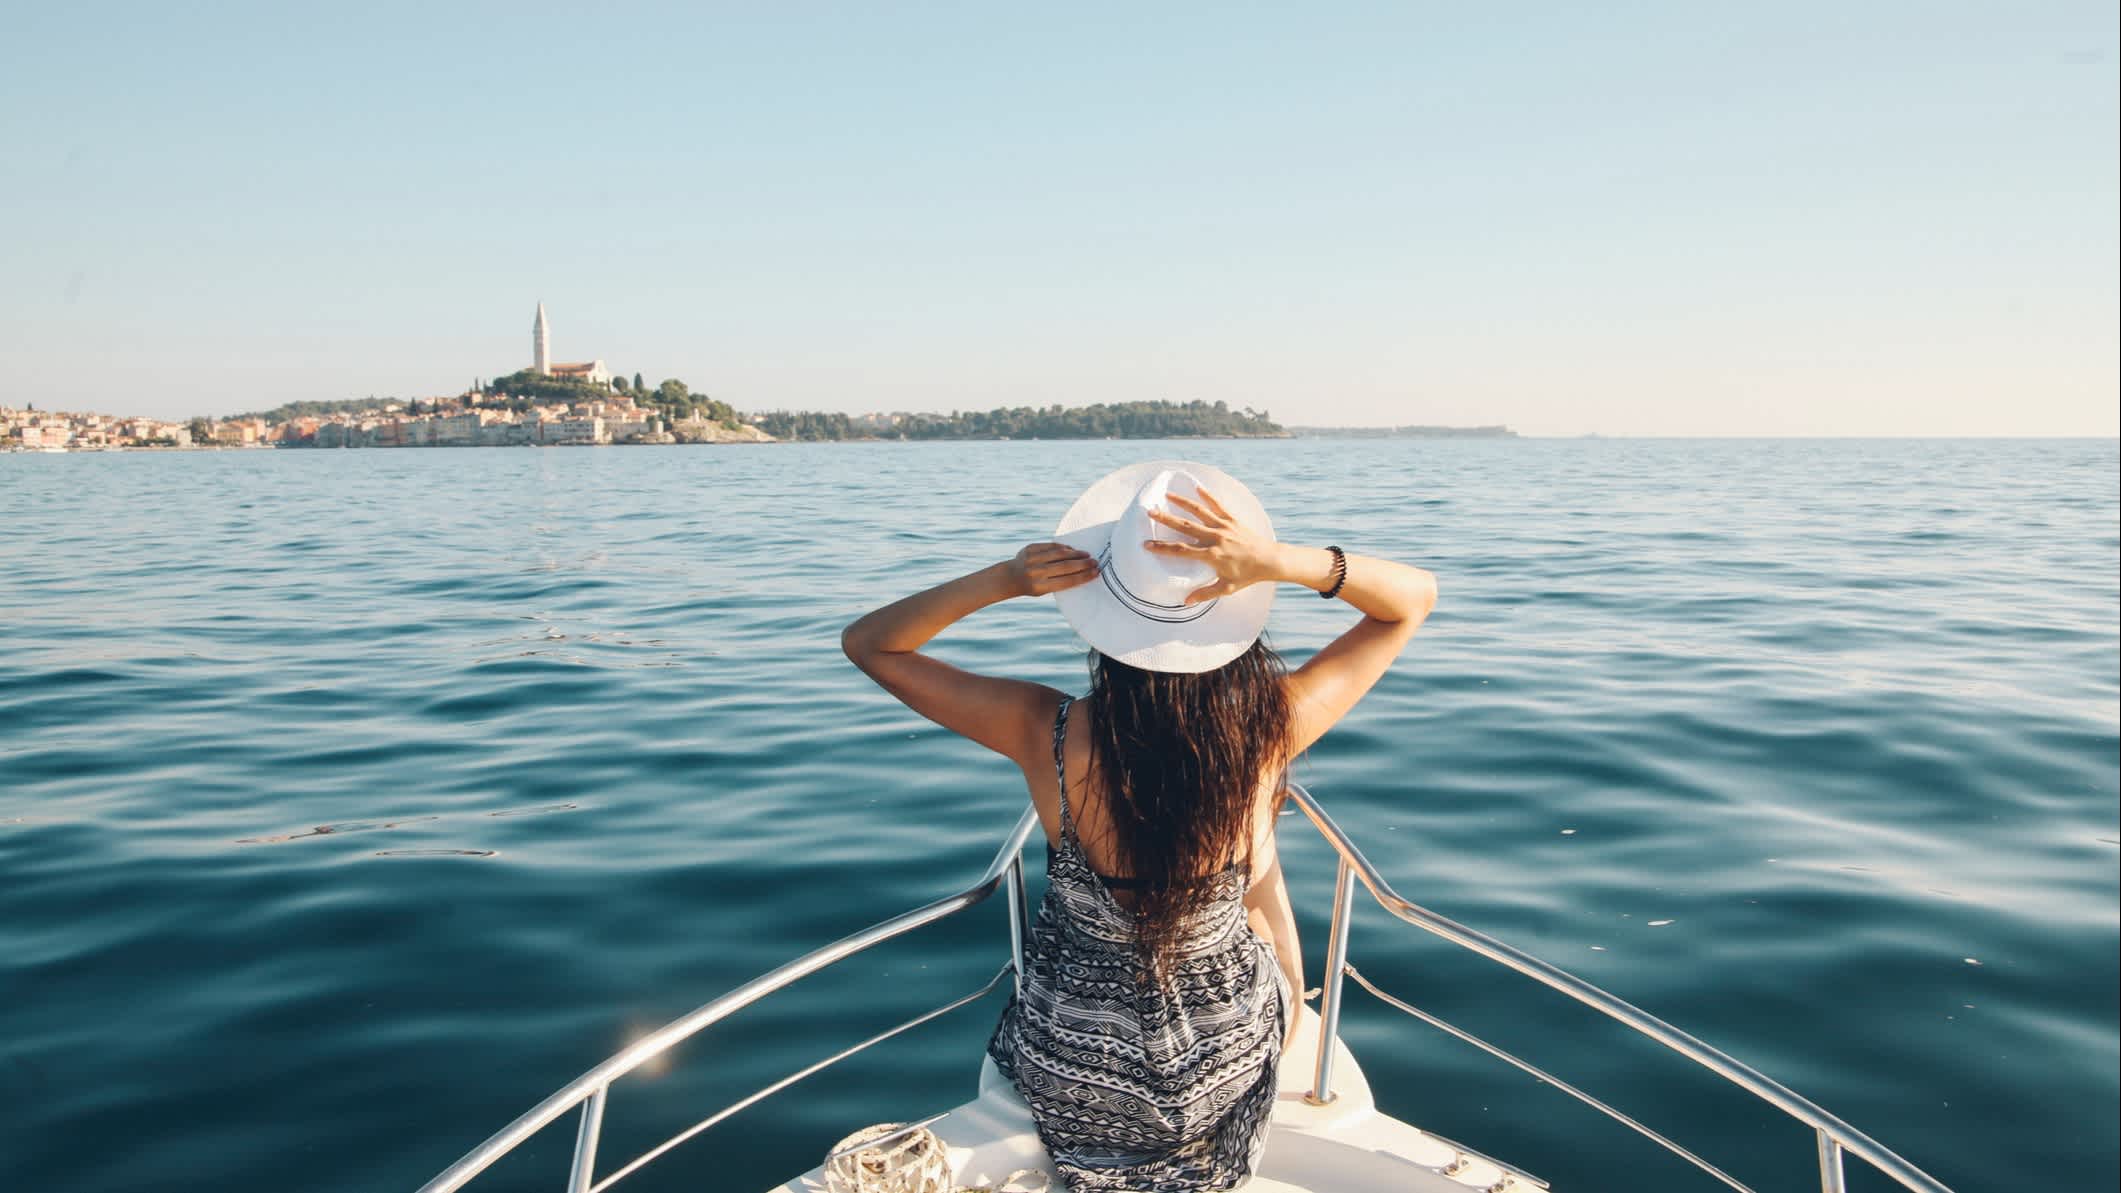 Une promenade en bateau sur la mer Adriatique avec la ville de Rovinj à l'horizon, Croatie.
